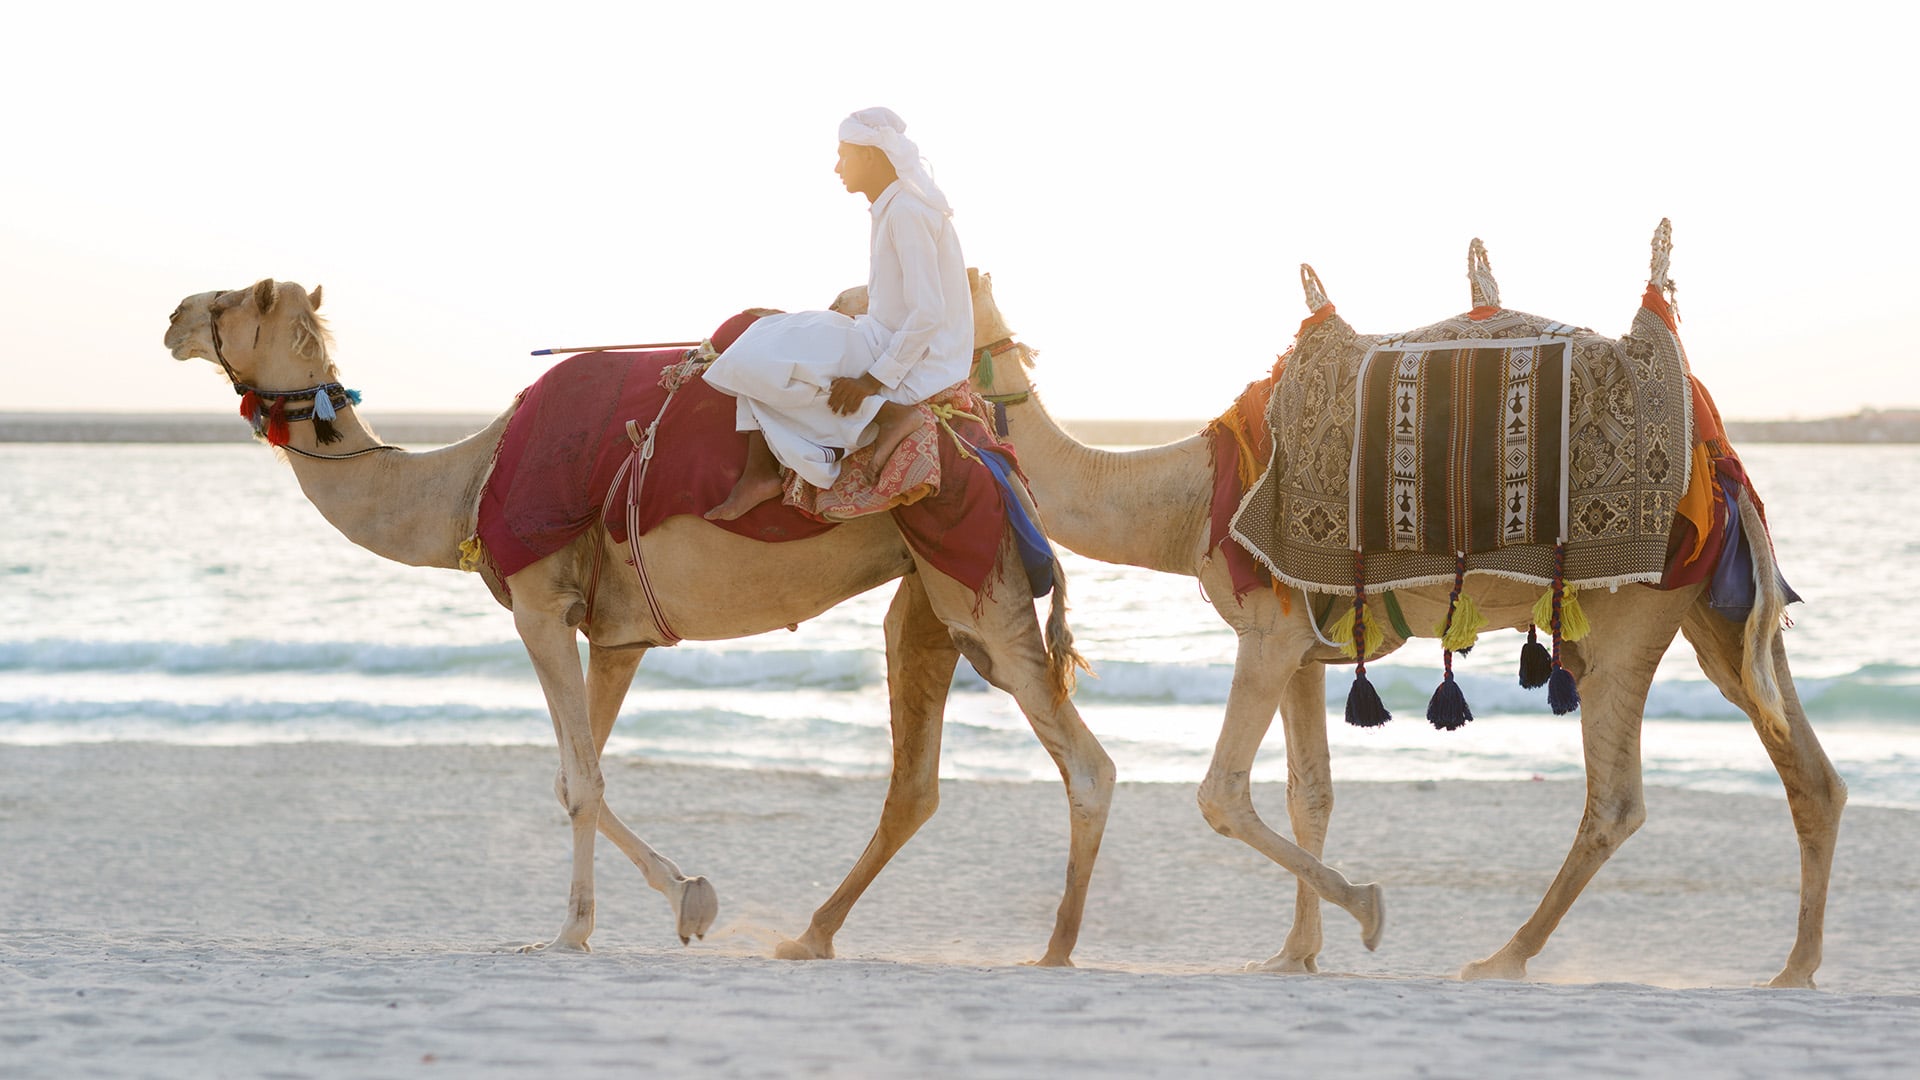 man on camel on beach